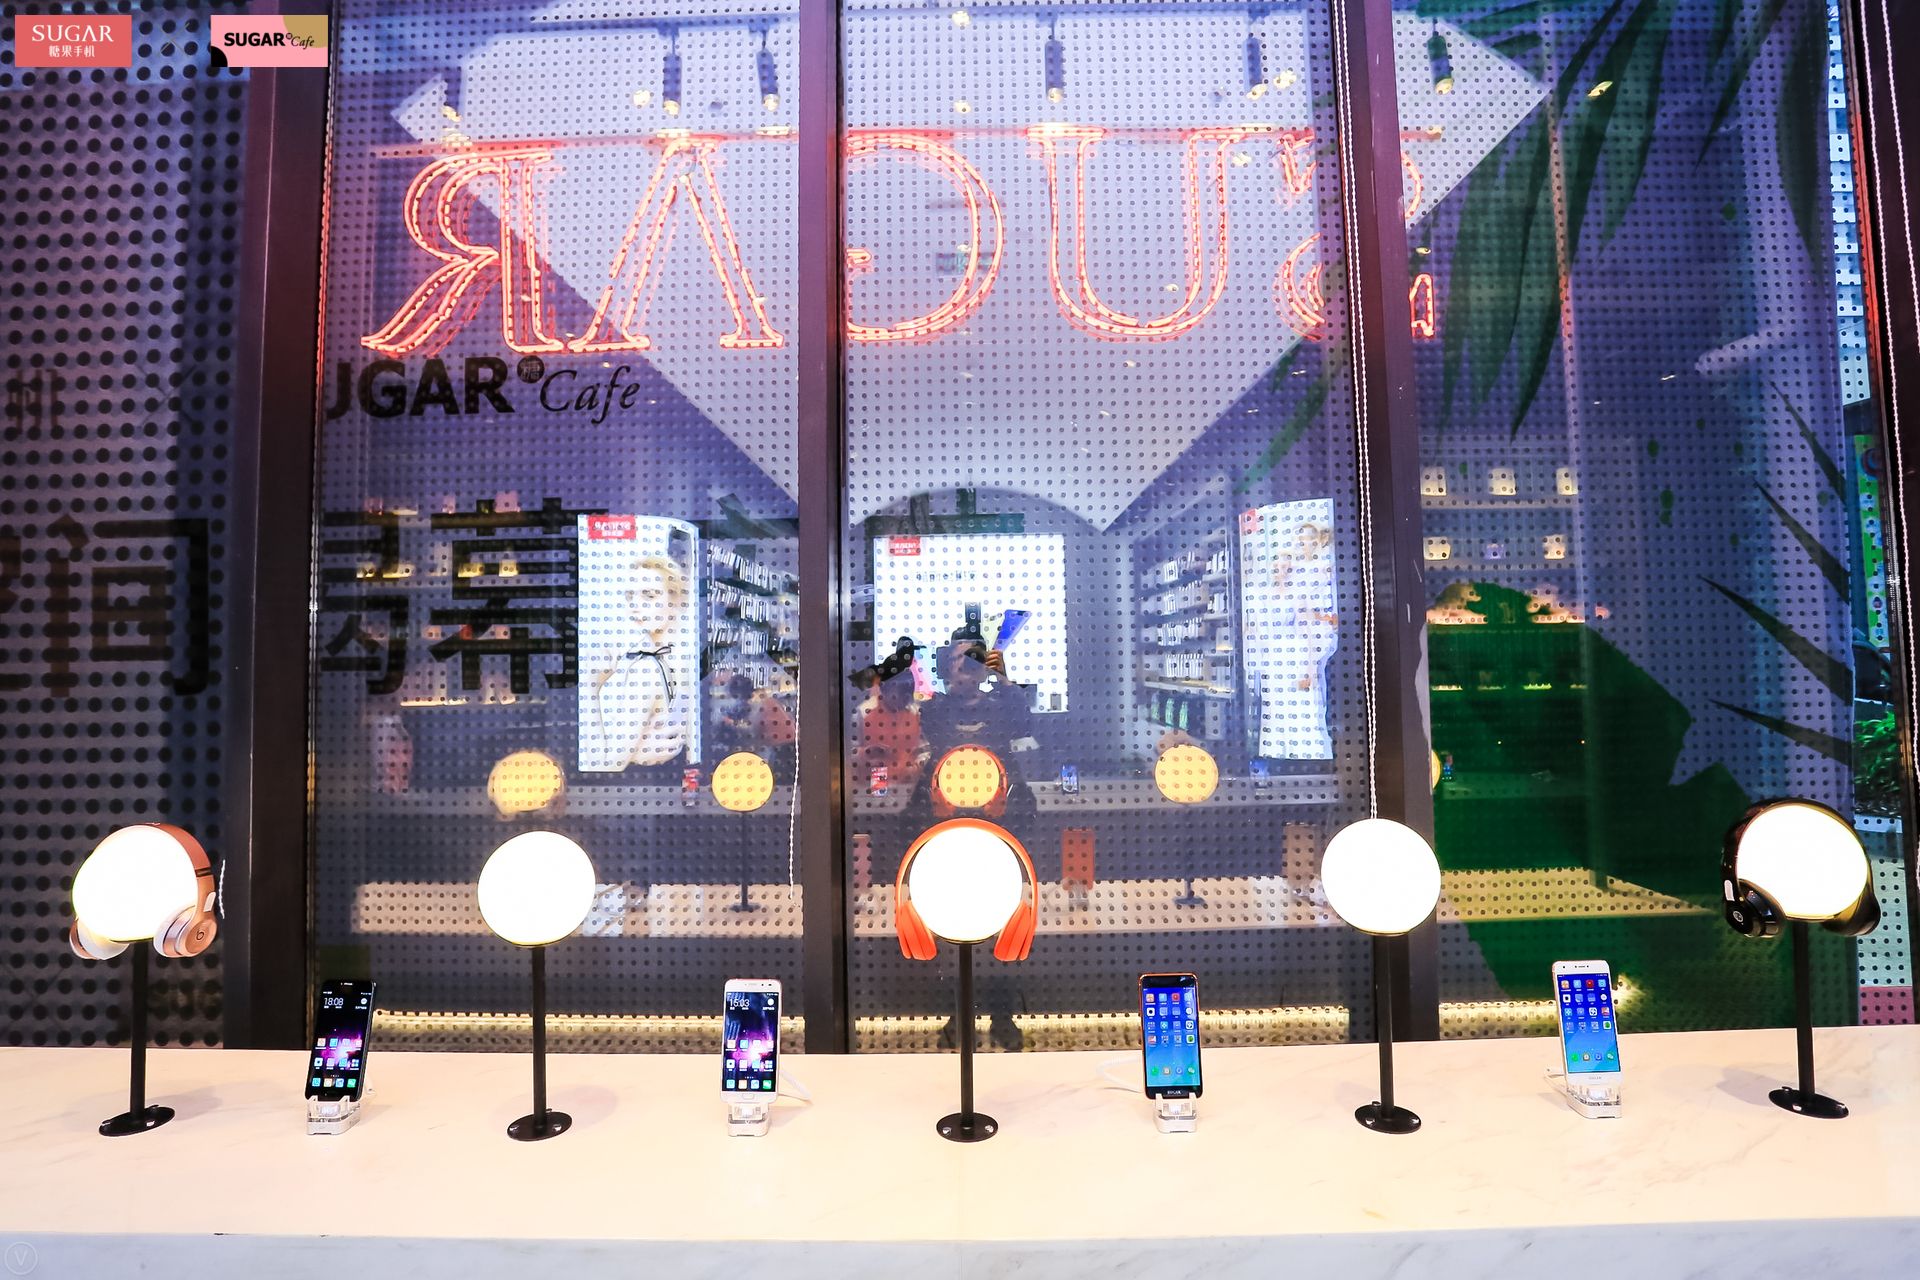 线下新模式,SUGAR推出智能手机、美学咖啡